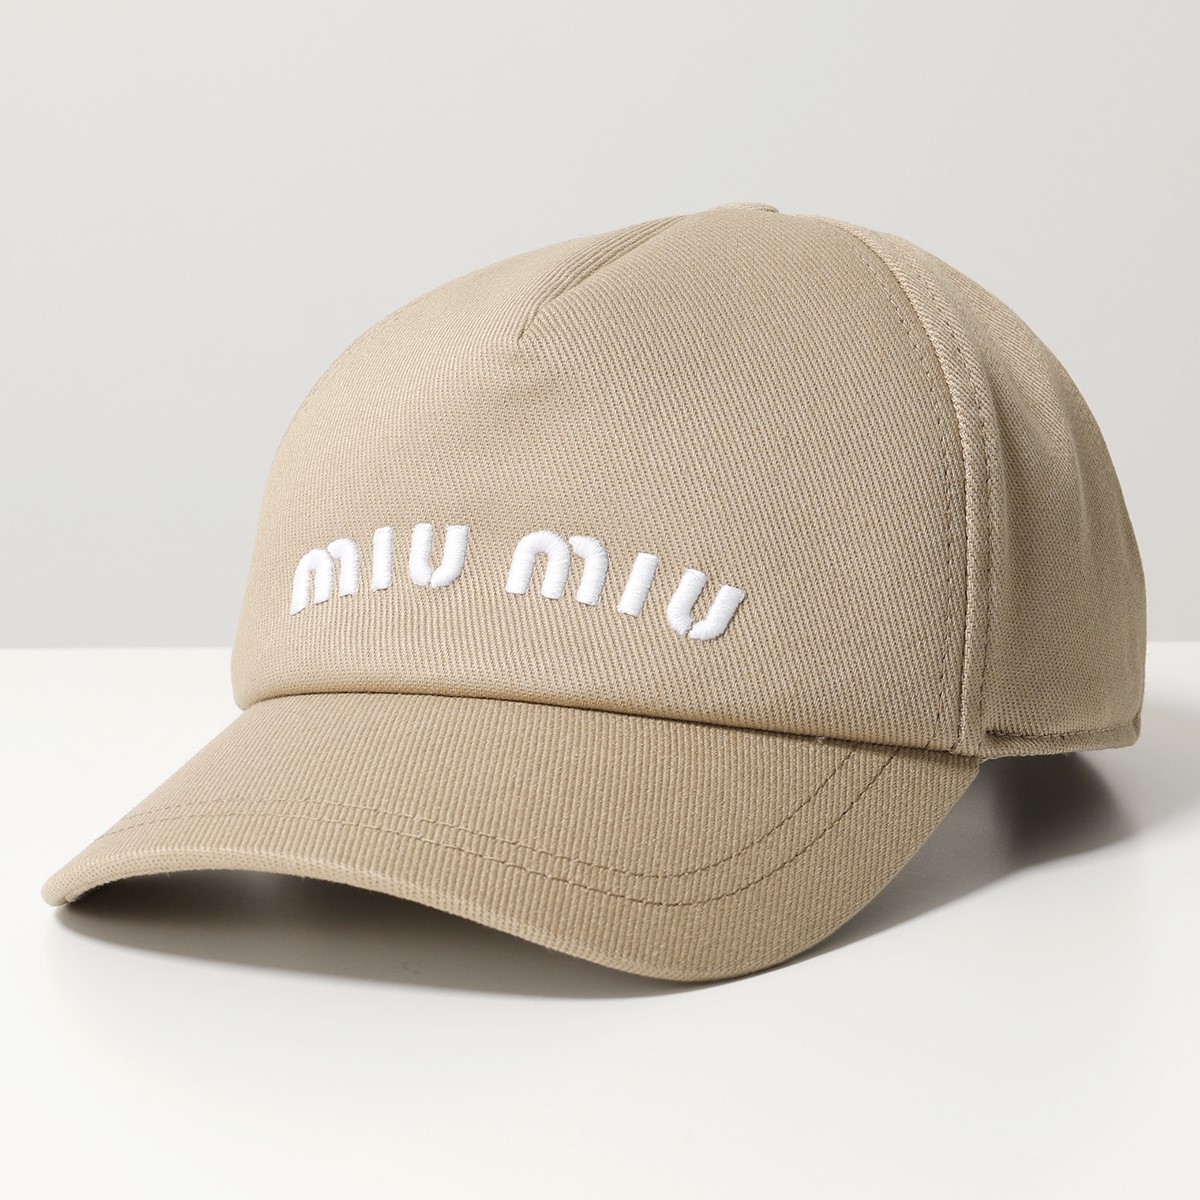 MIUMIU ミュウミュウ ベースボールキャップ 5HC179 2DXI レディース ロゴ 刺繍 エンボス デニム 帽子カラー4色